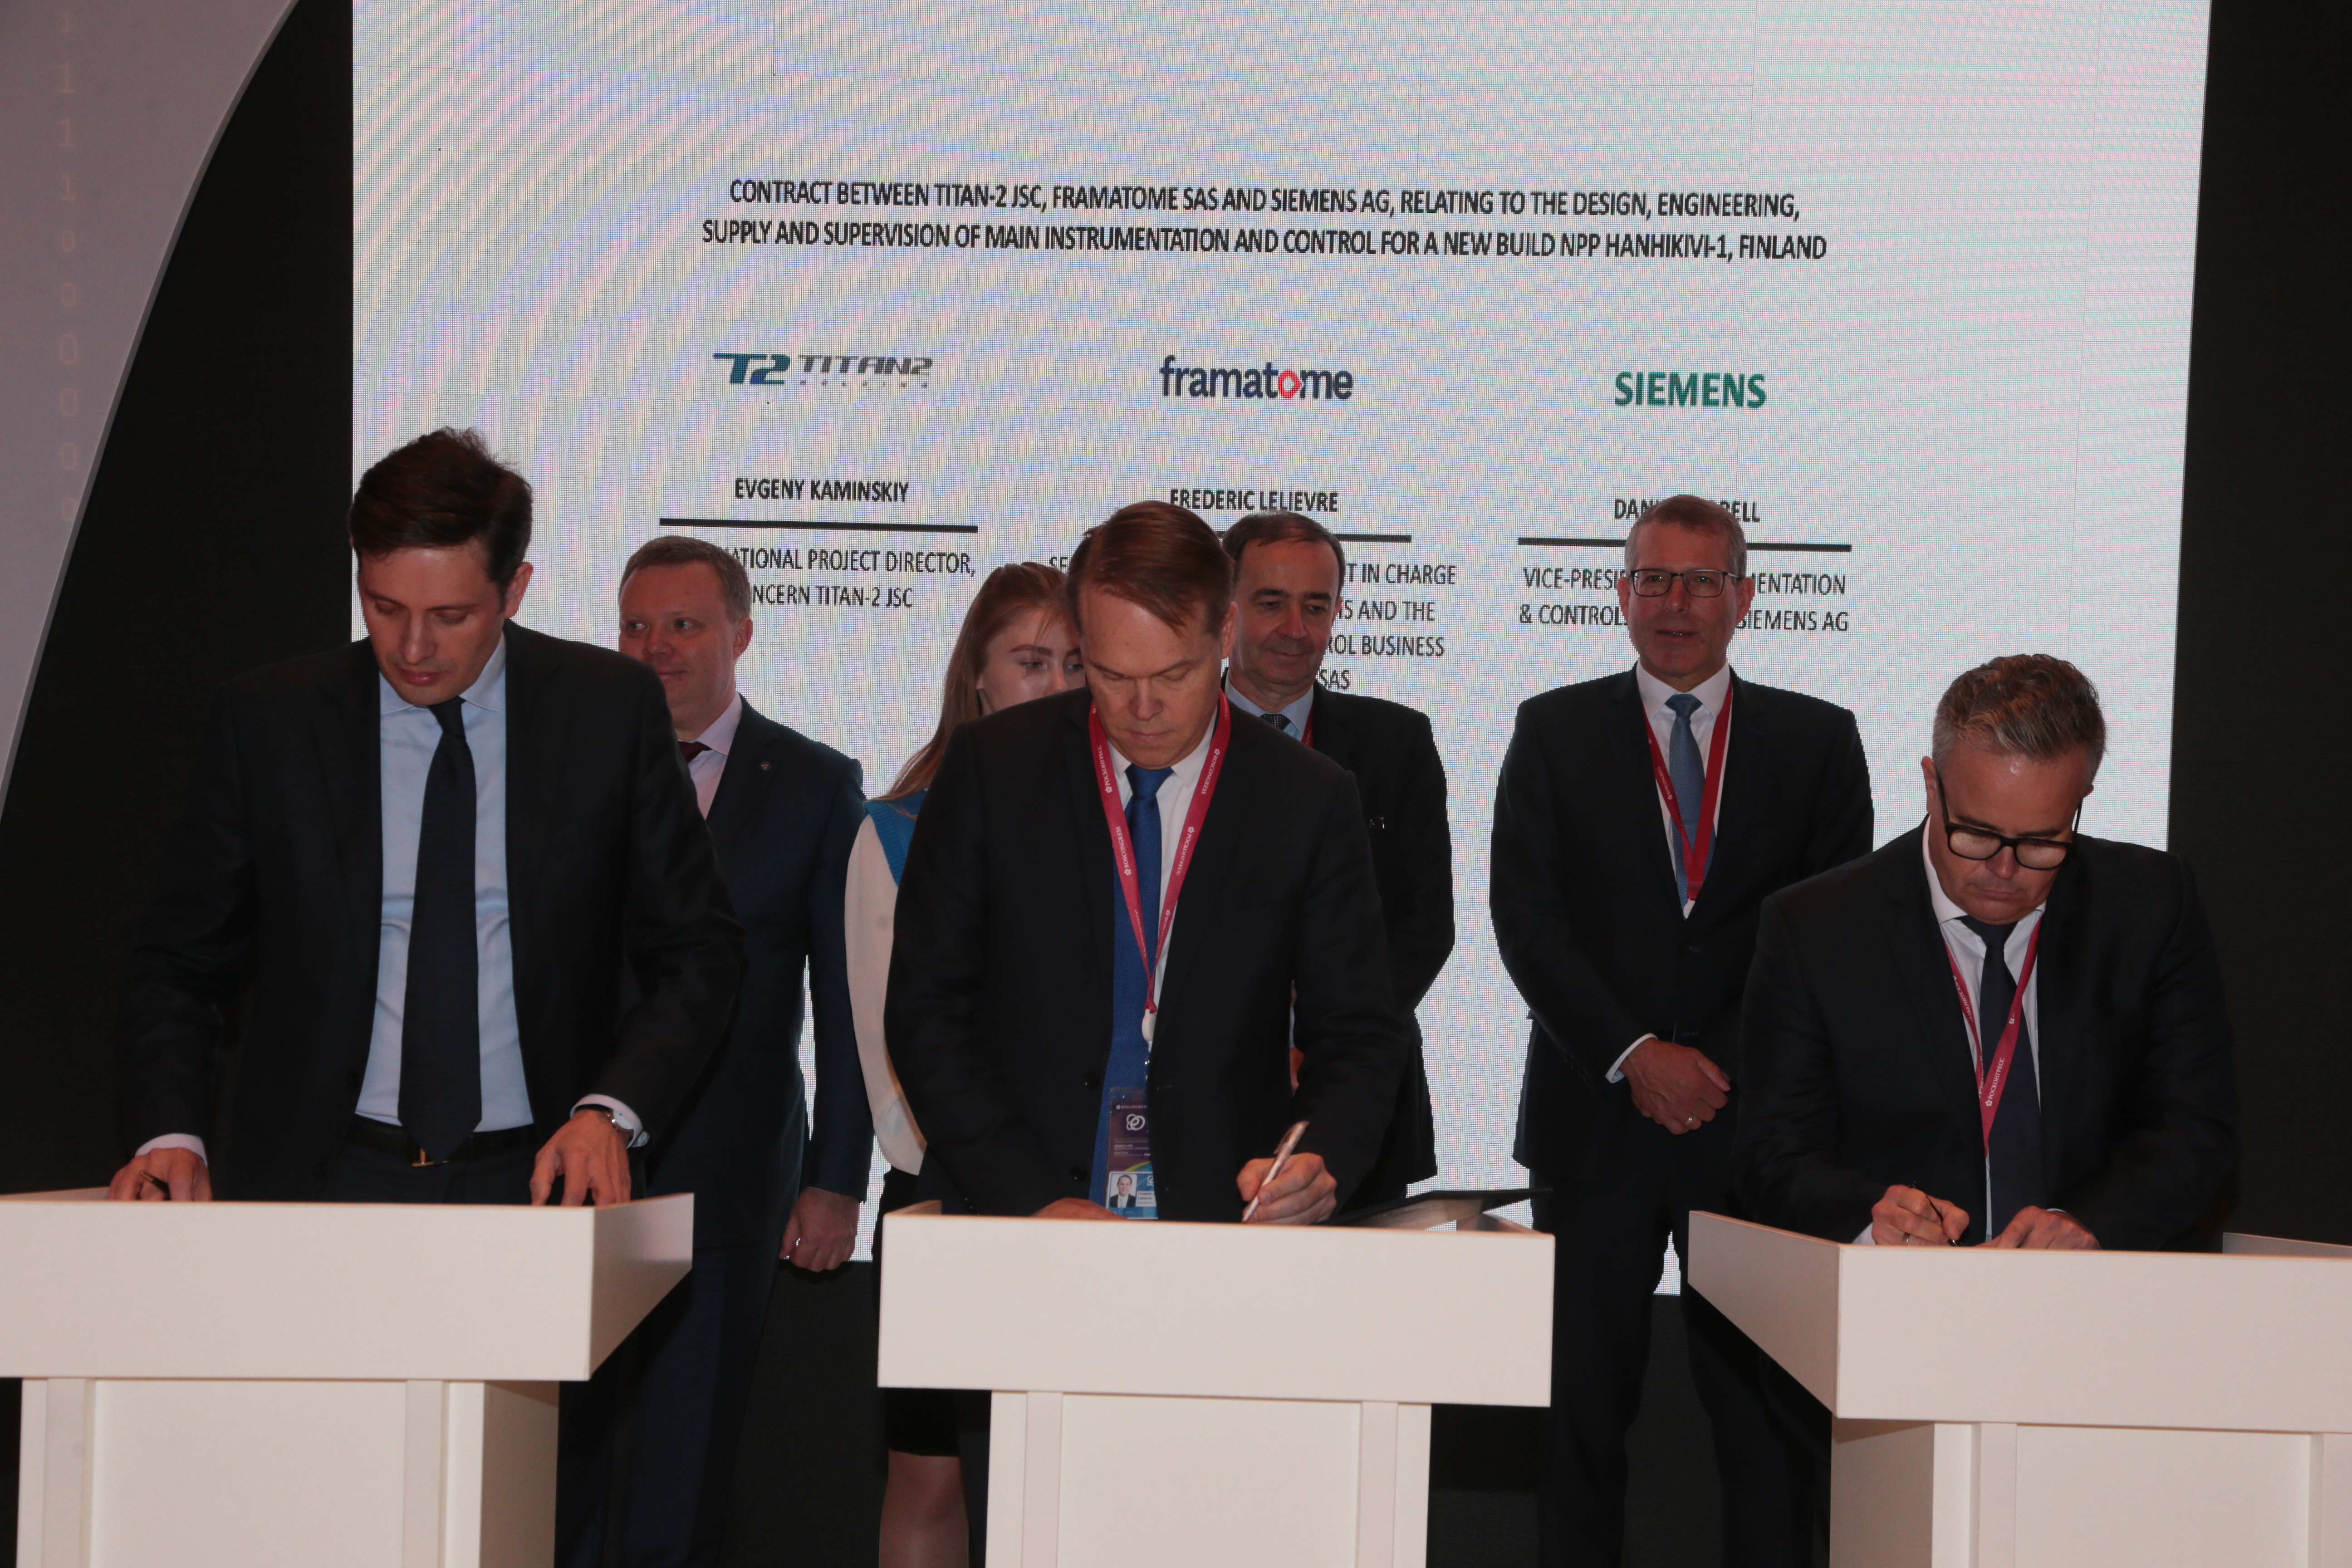 TITAN-2 e o consórcio Framatome-Siemens assinam contrato para o fornecimento da Instrumentação e Controle Principal (I&C) da central HANHIKIVI-1